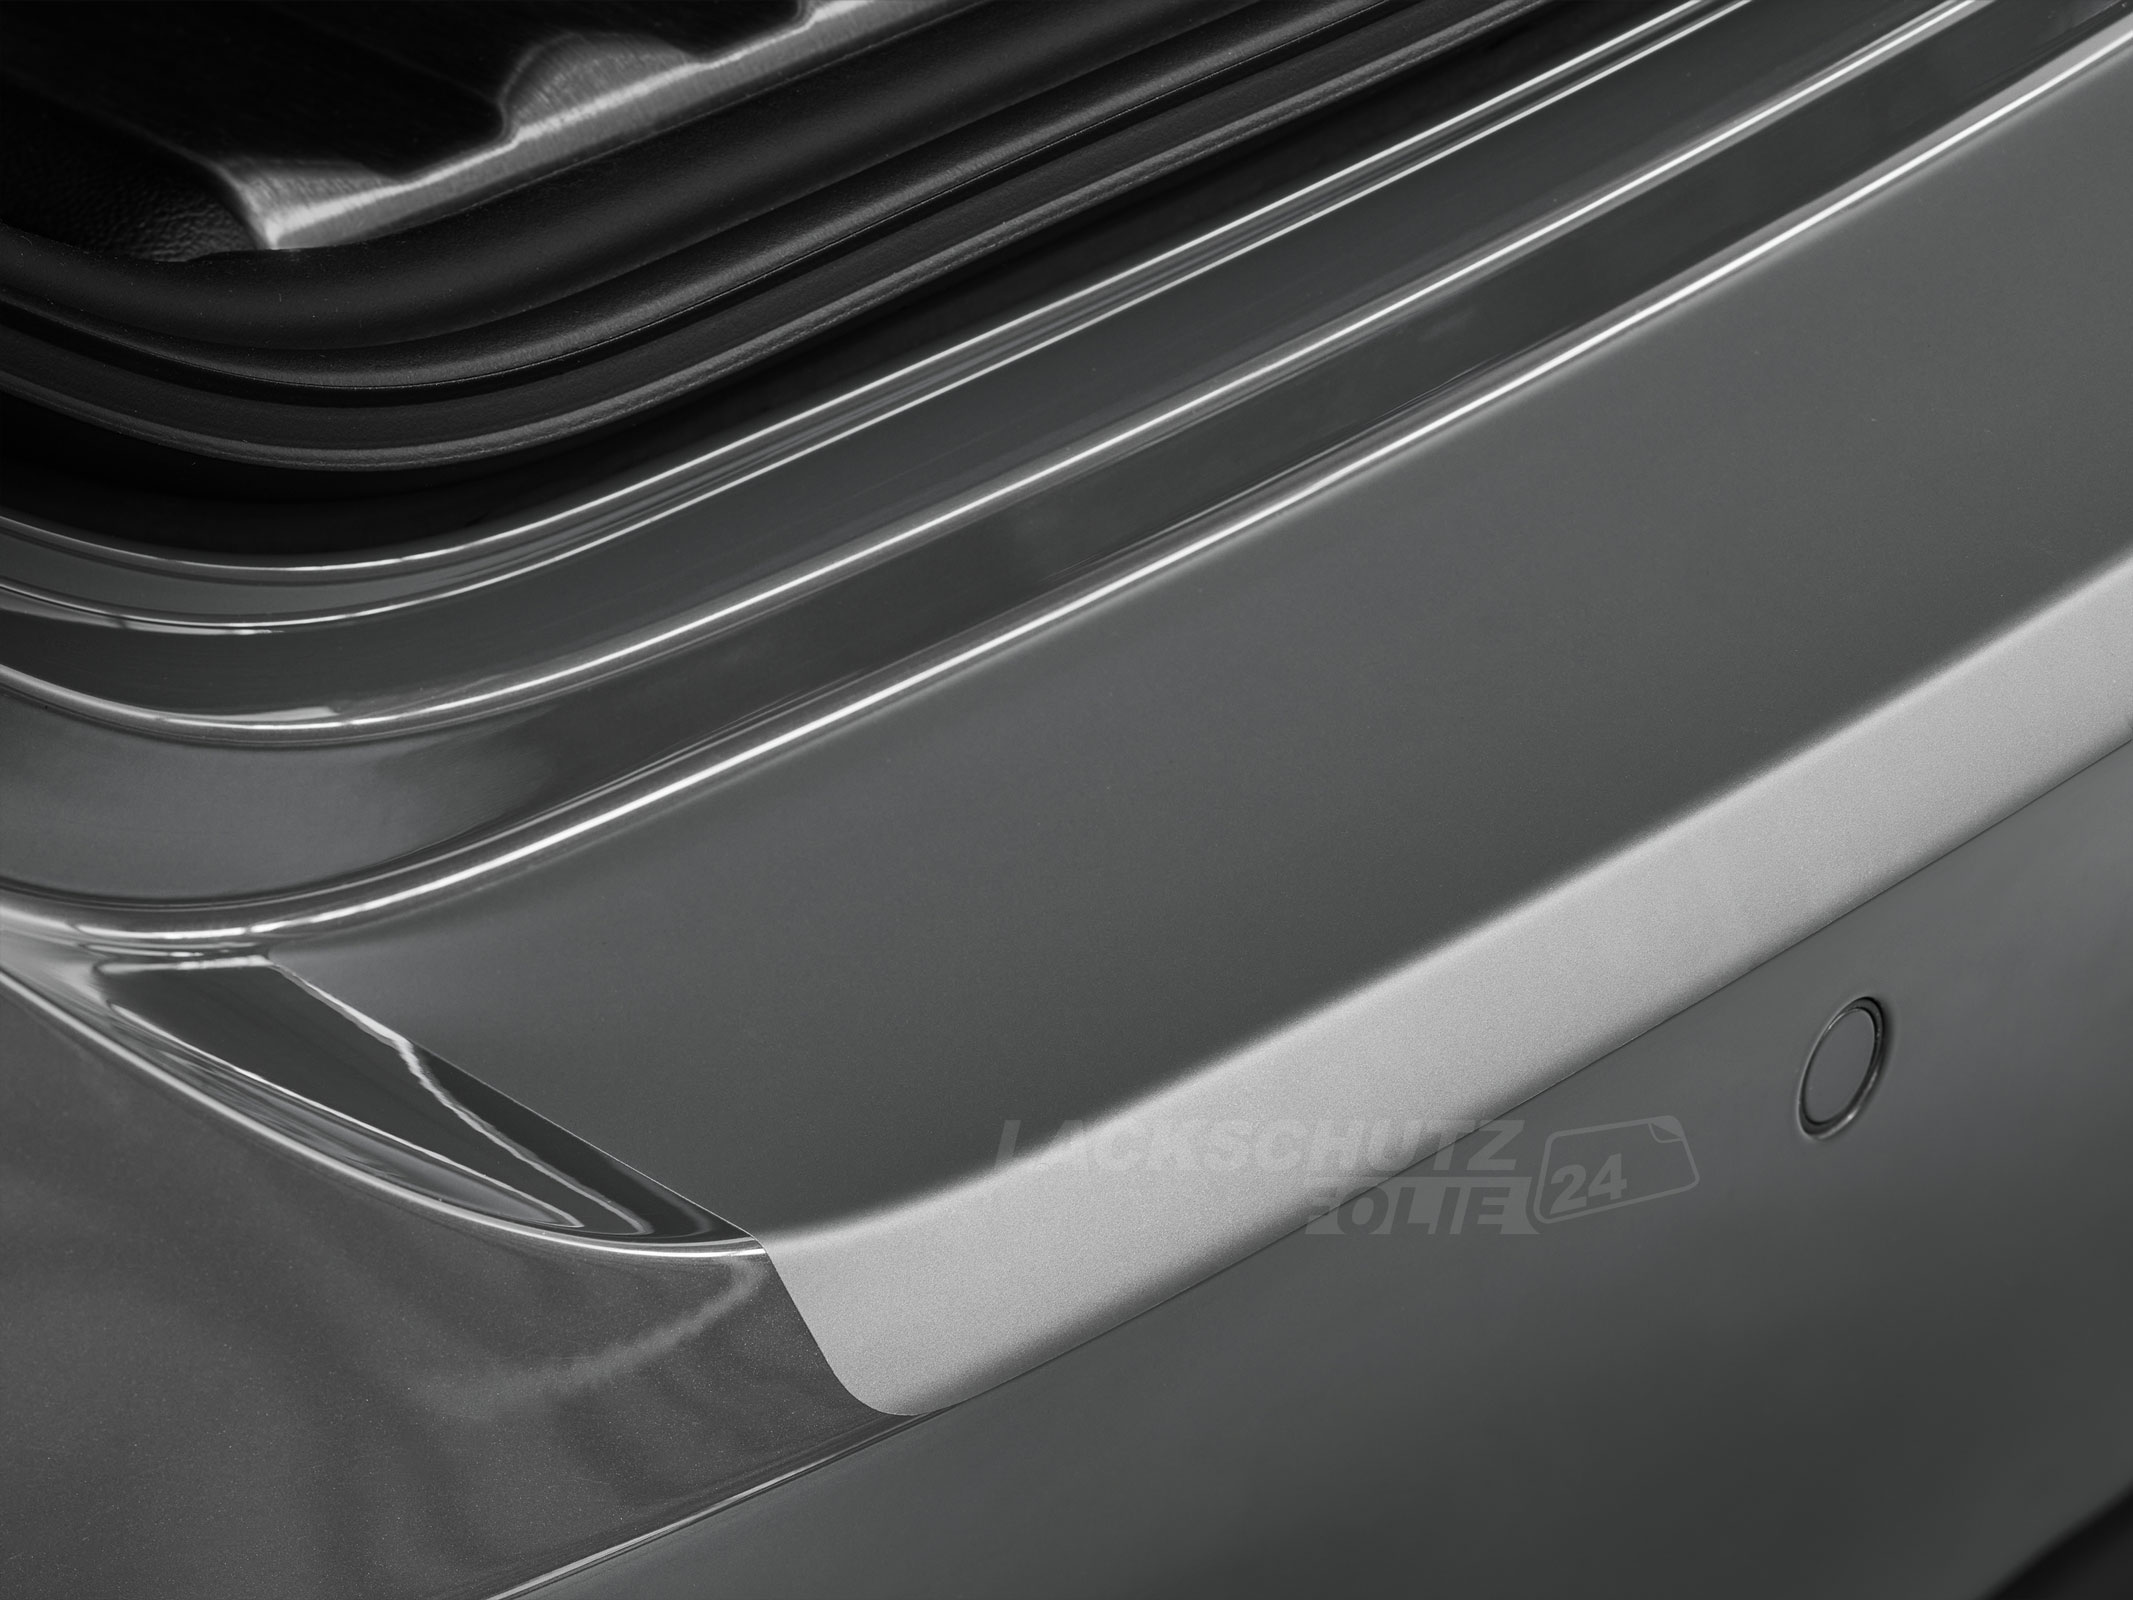 Ladekantenschutzfolie - Transparent Glatt MATT 110 µm stark  für Mercedes-Benz M-Klasse Typ W164, BJ 2005-2011